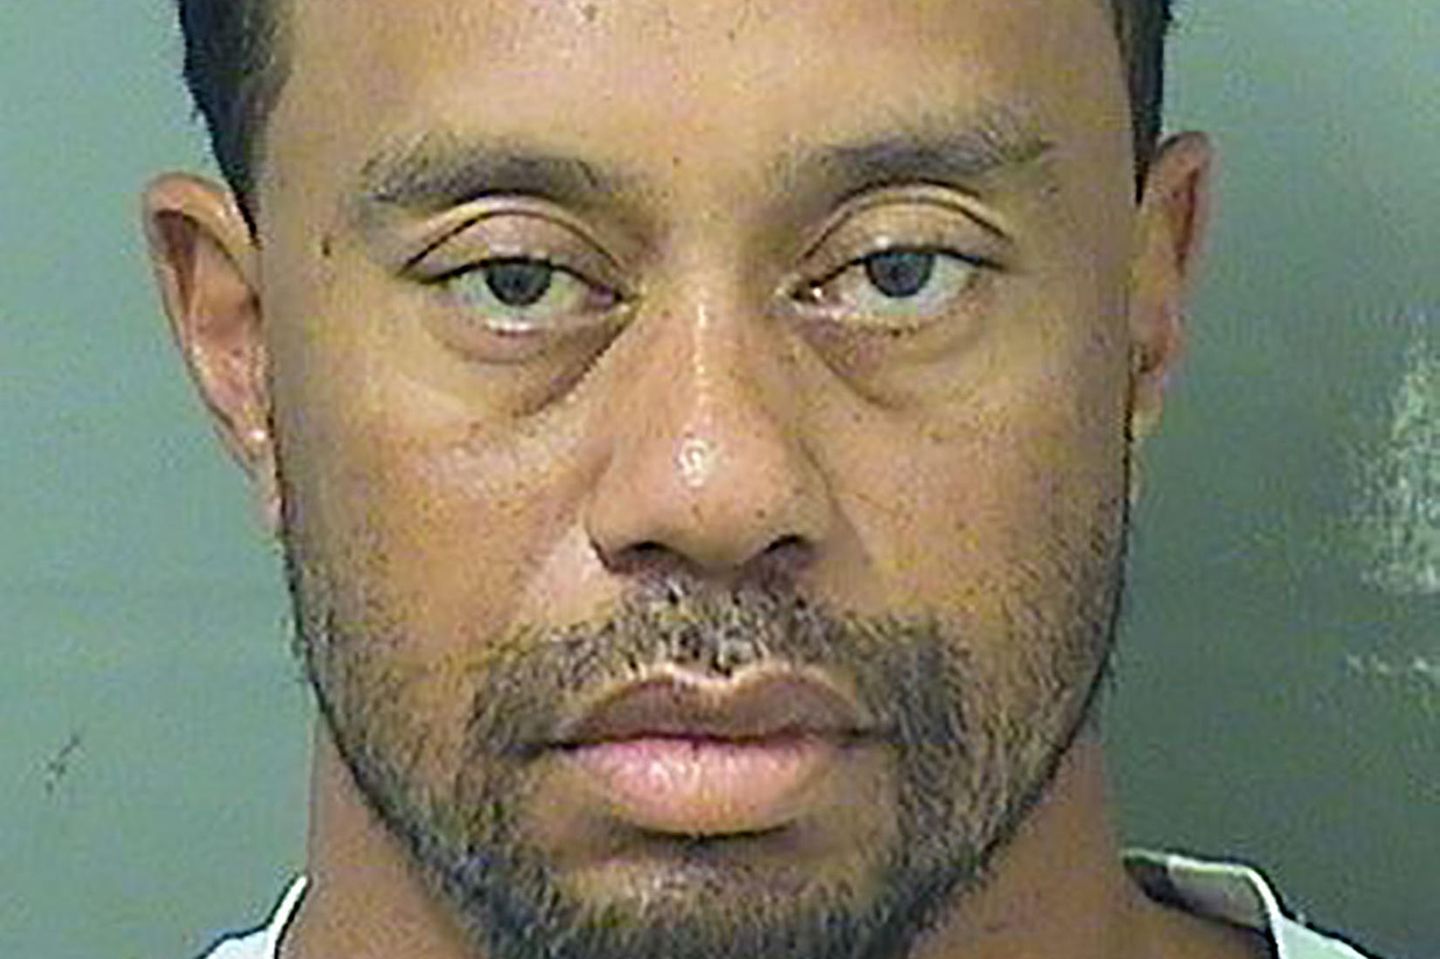 Das Polizeifoto gibt Anlass zur Sorge: Der einstige Superstar Tiger Woods sieht müde und ungepflegt aus. 